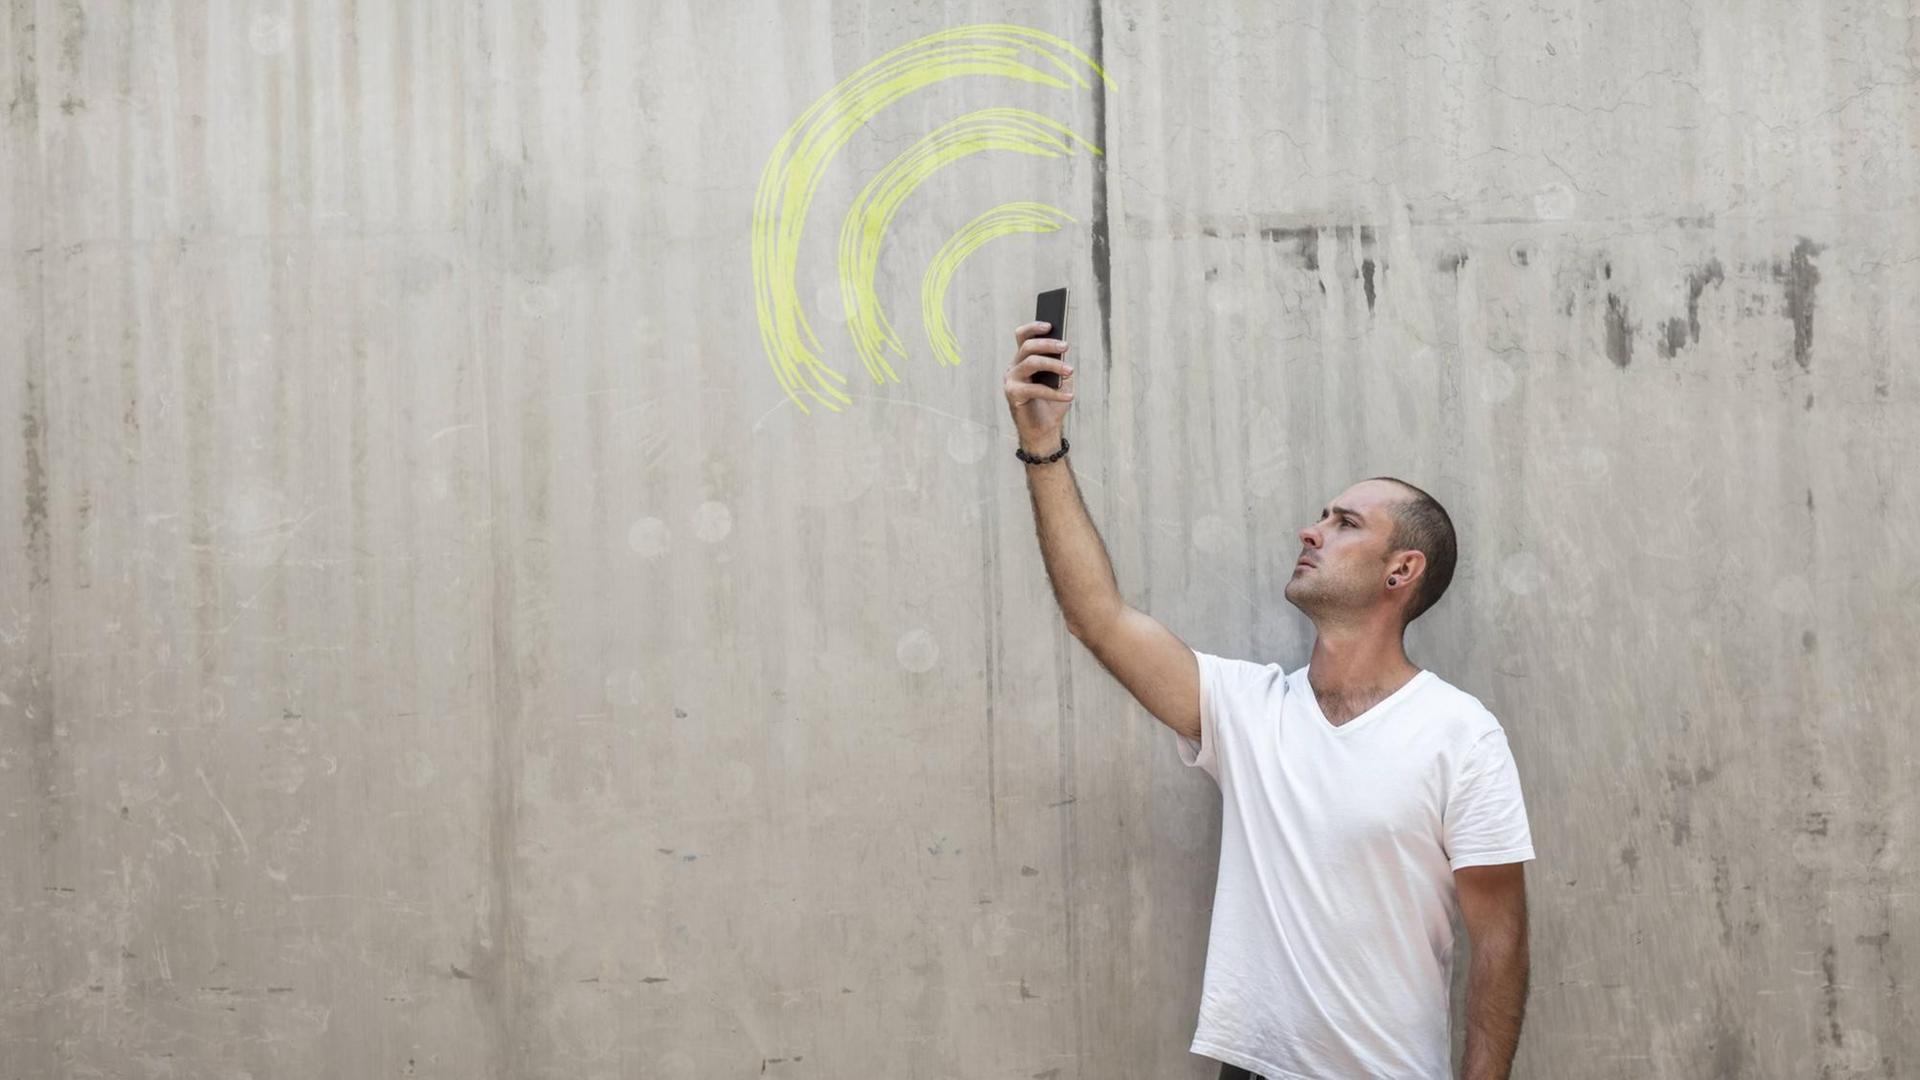 Mann hält sein Mobiltelefon in die Luft, auf einer Wand ist das WLAN Zeichen gemalt